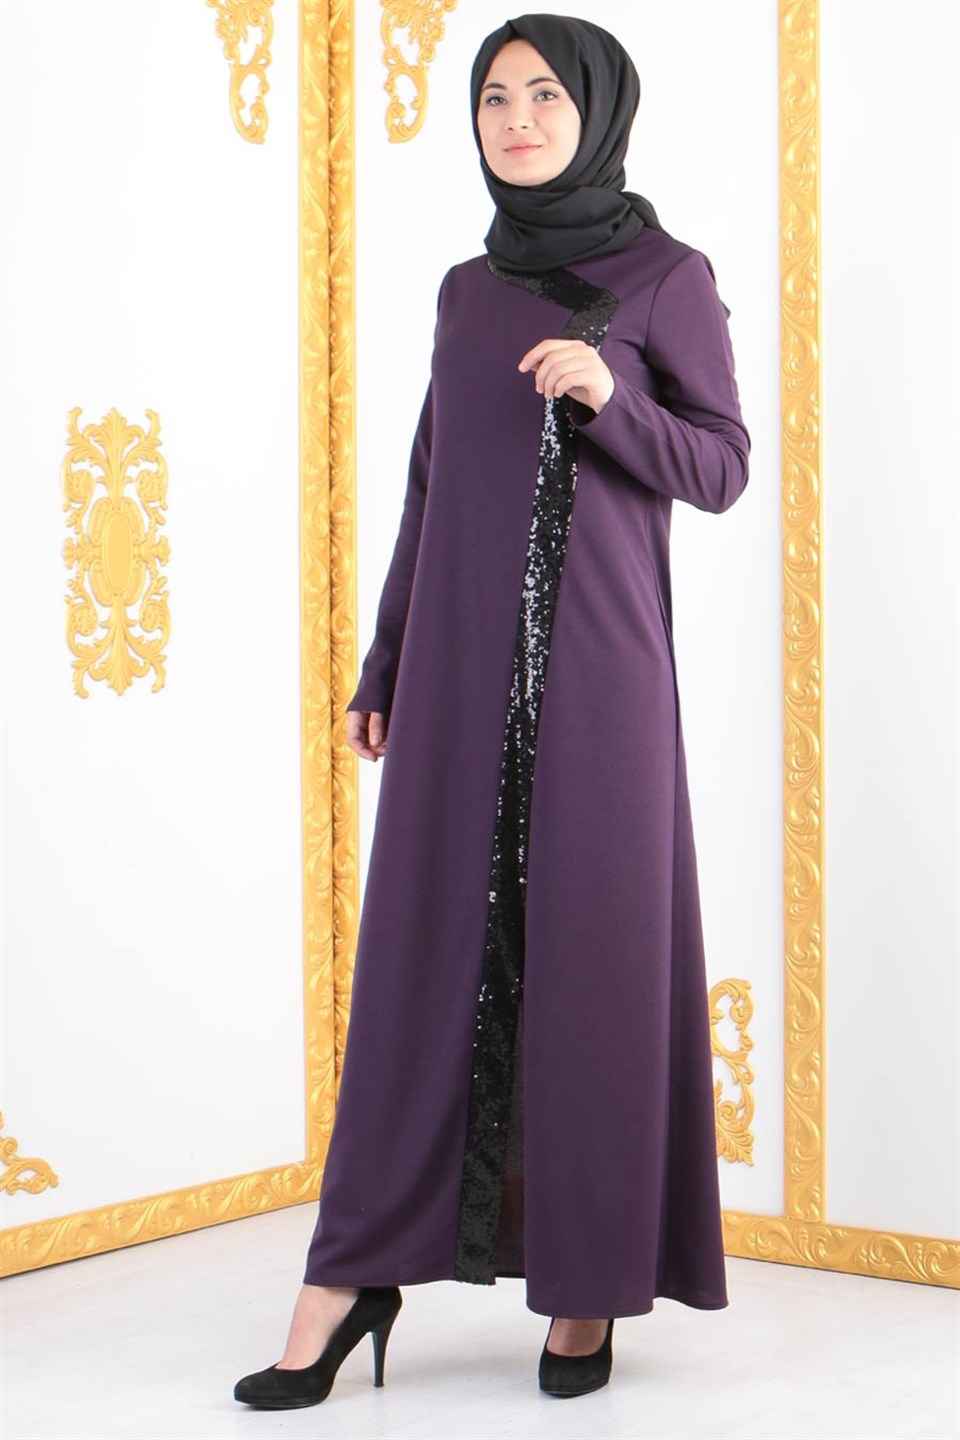 Bahye Zen Tesettür Abaya Ferace Elbise Modelleri